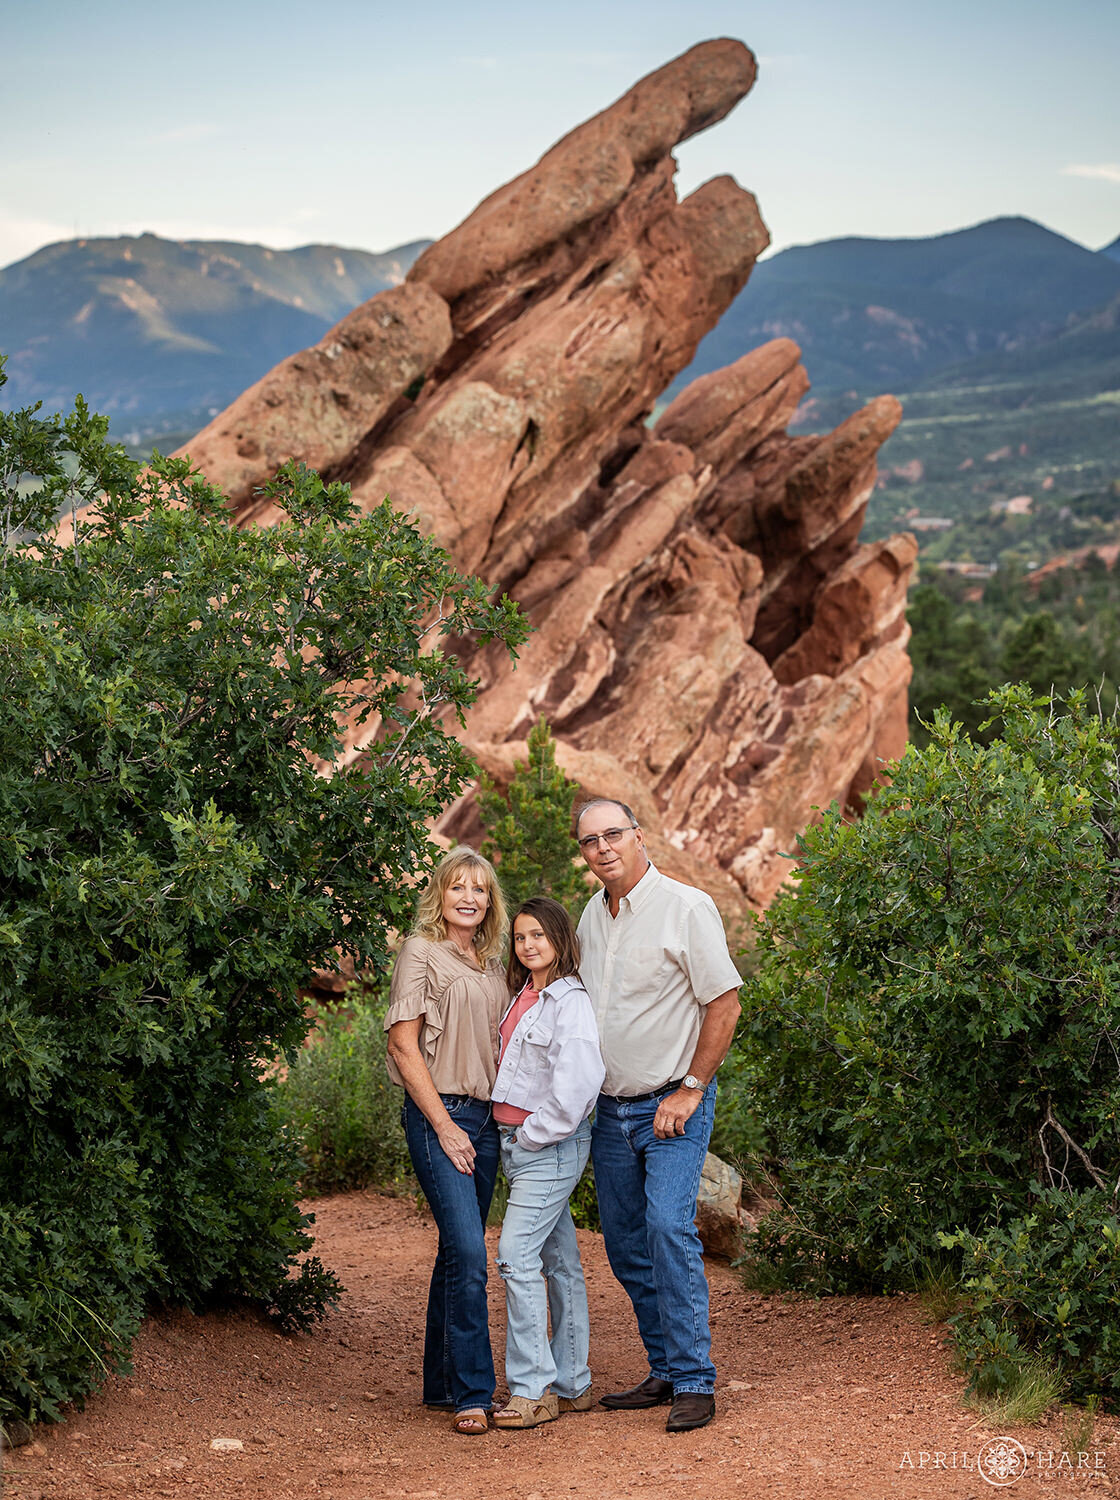 Garden of the Gods Family Photos in Colorado Springs CO